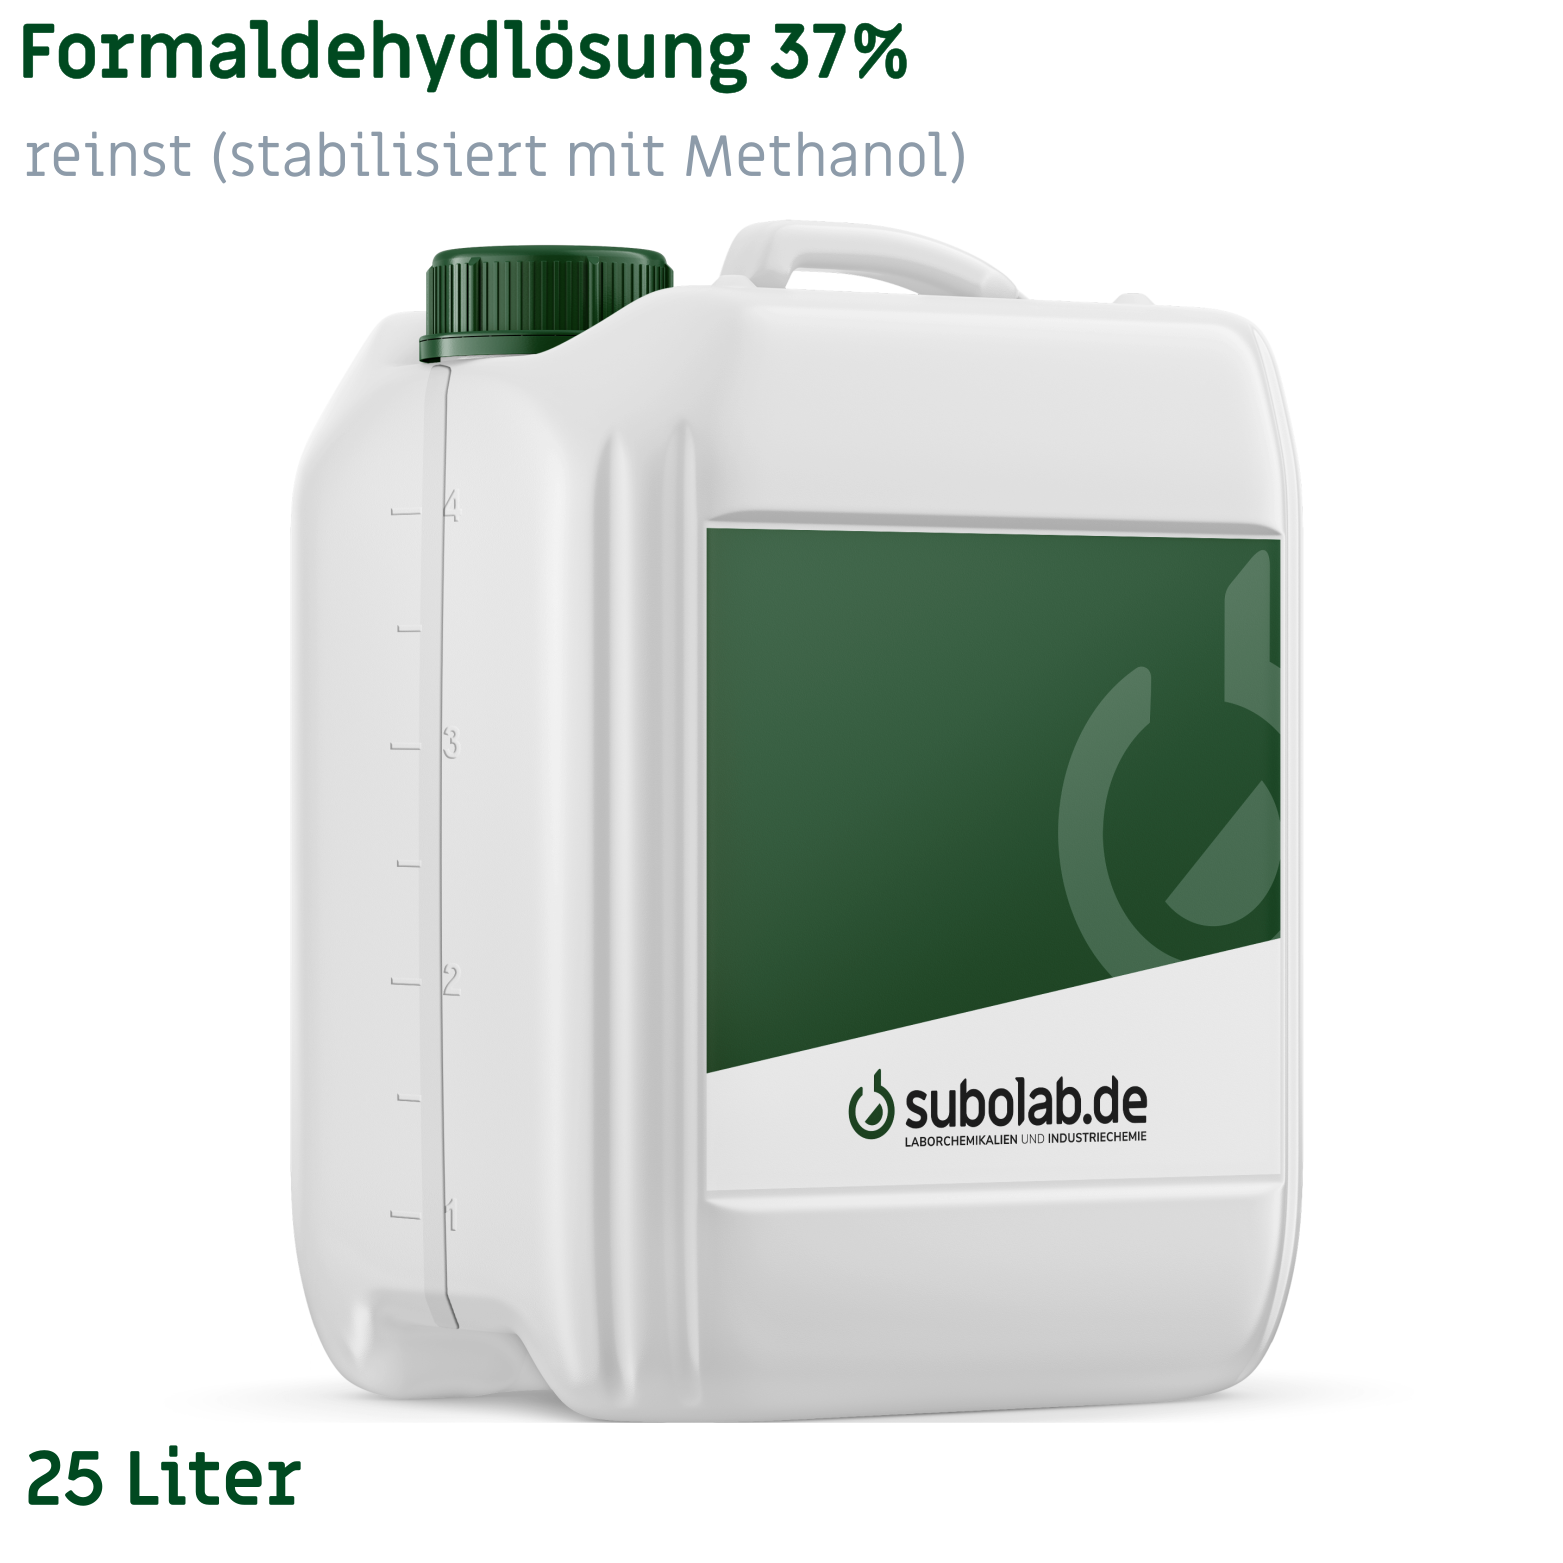 Bild von Formaldehydlösung 37% reinst (stabilisiert mit Methanol) (25 Liter)